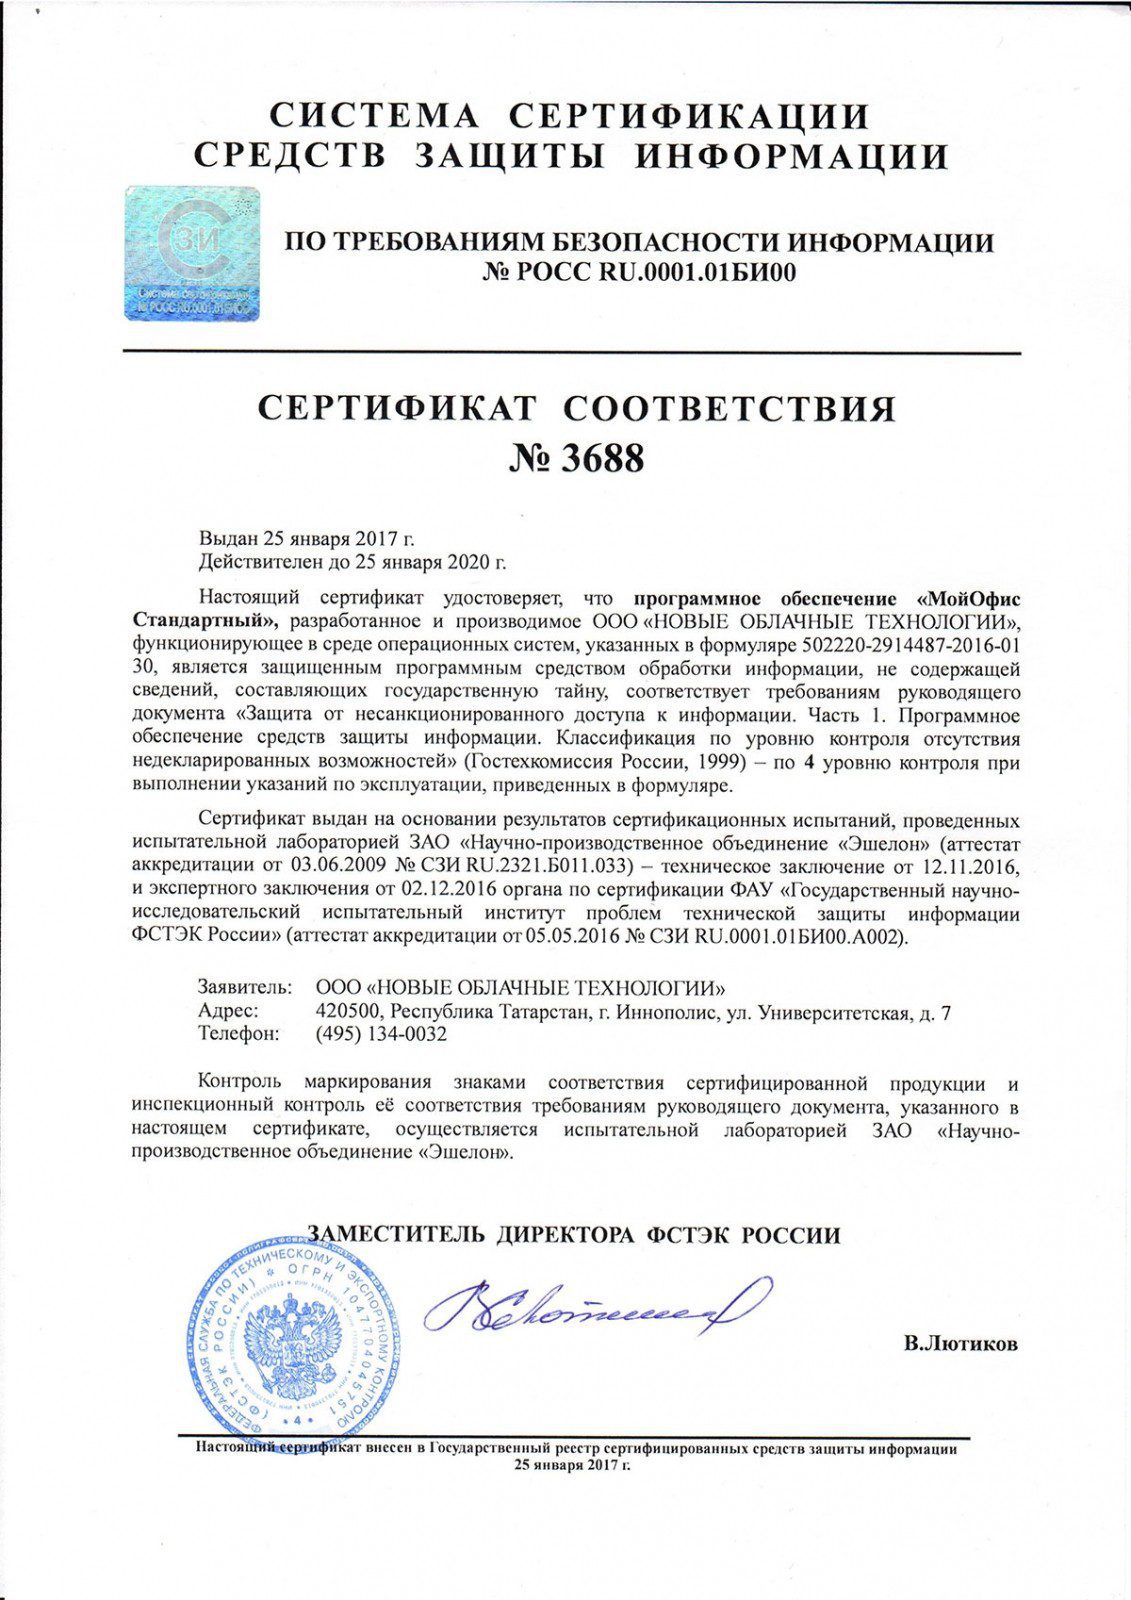 Сертификат ФСТЭК на программное обеспечение. МП-1ц сертификат ФСТЭК 110. ЛГШ-404 сертификат ФСТЭК.